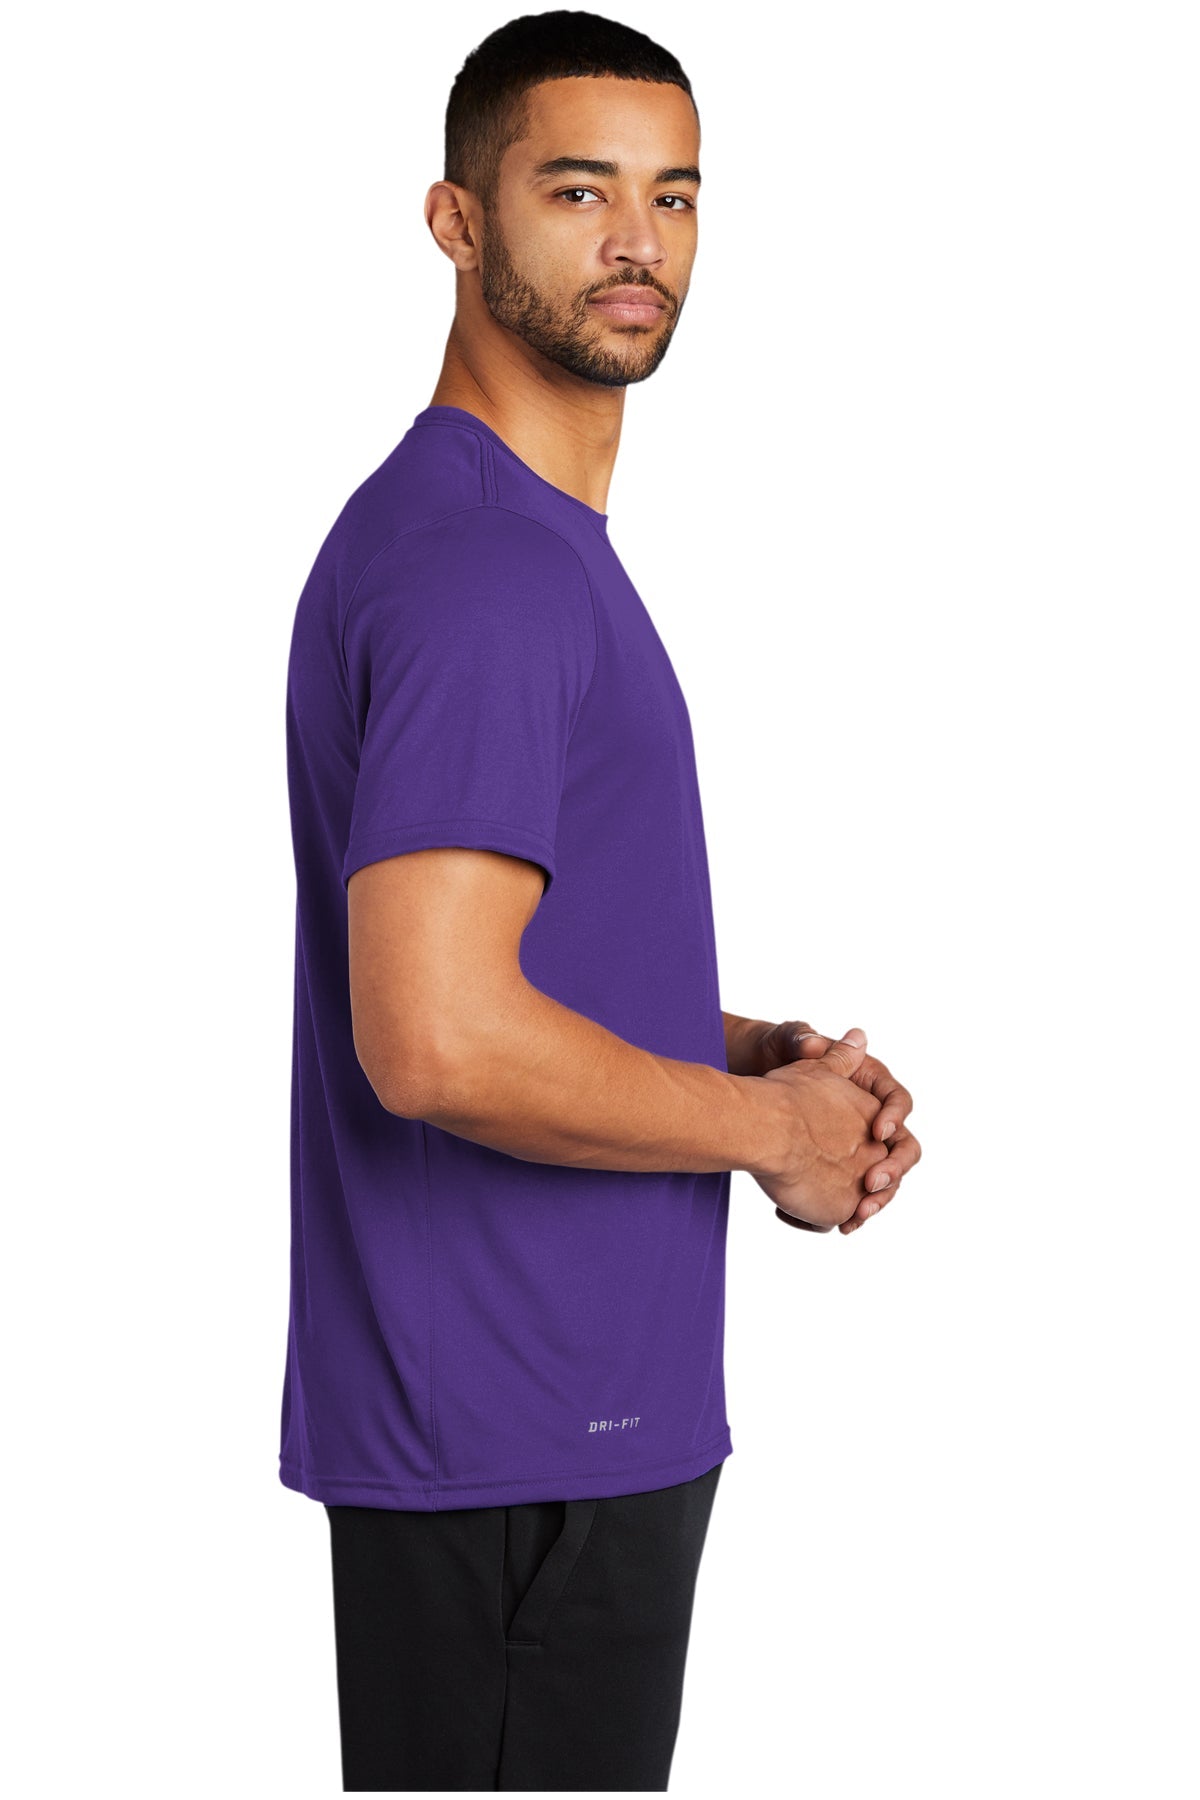 Nike Team rLegend Customized Tee's, Court Purple